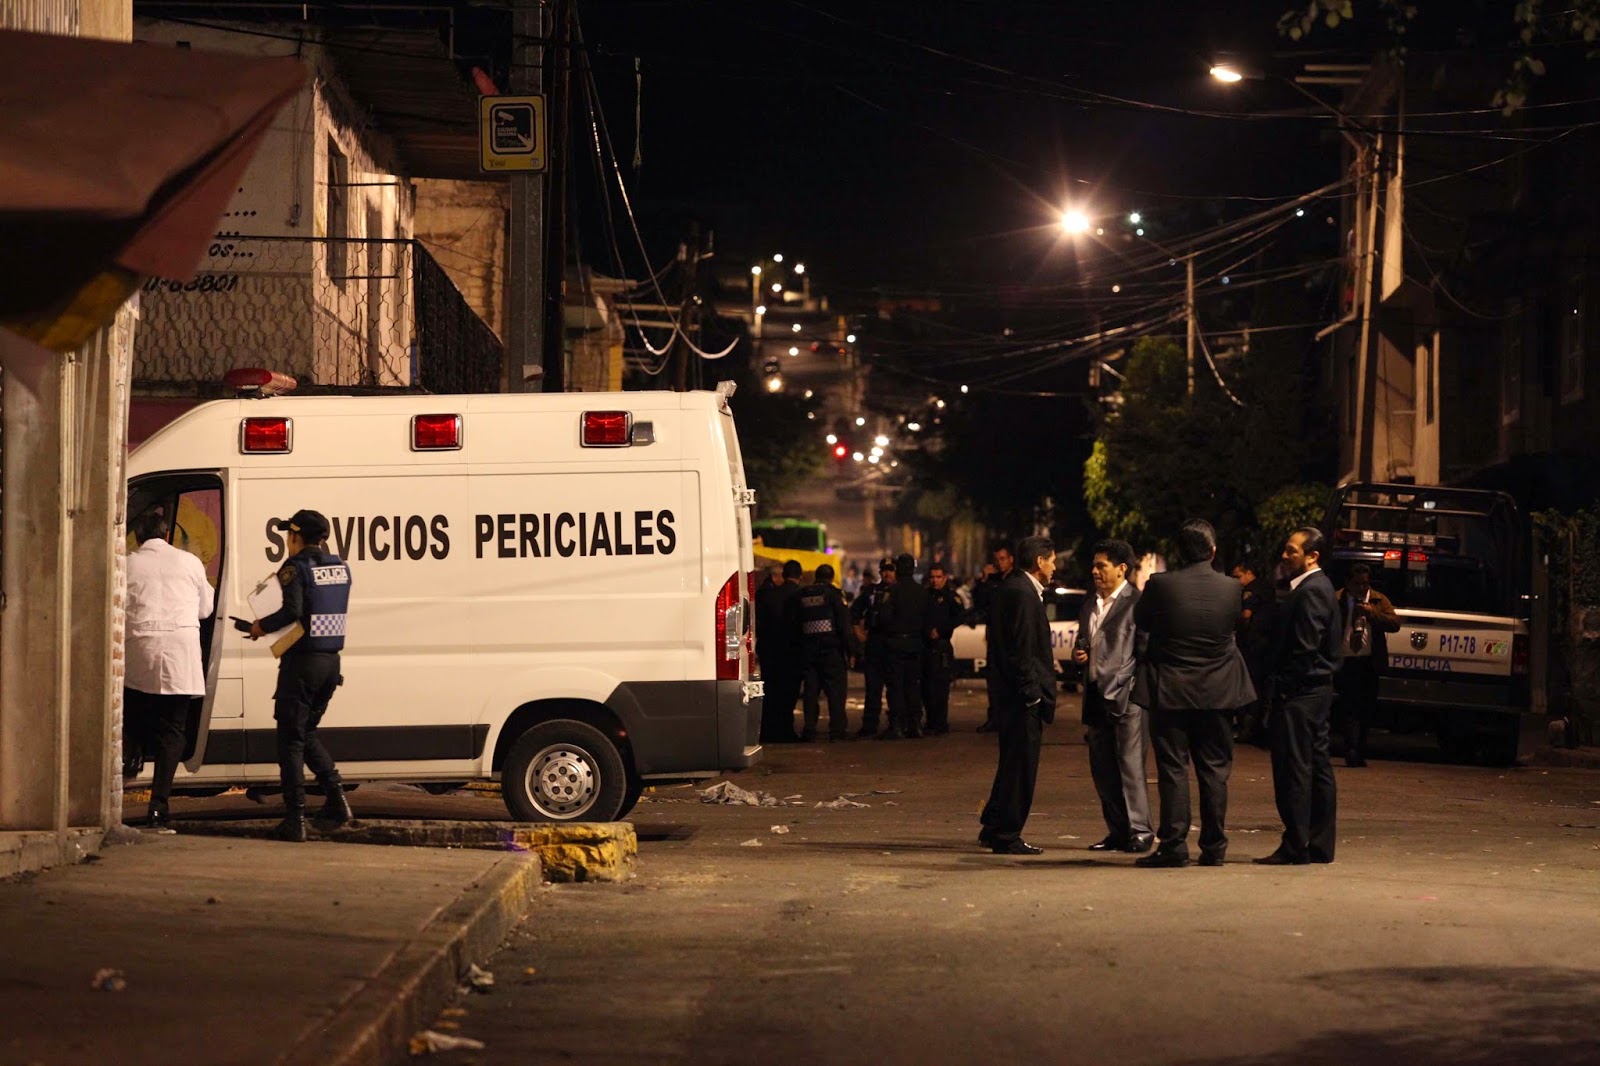  Puebla: Entre 9 y 11 miembros de una familia son asesinados; sobreviven dos niñas, heridas